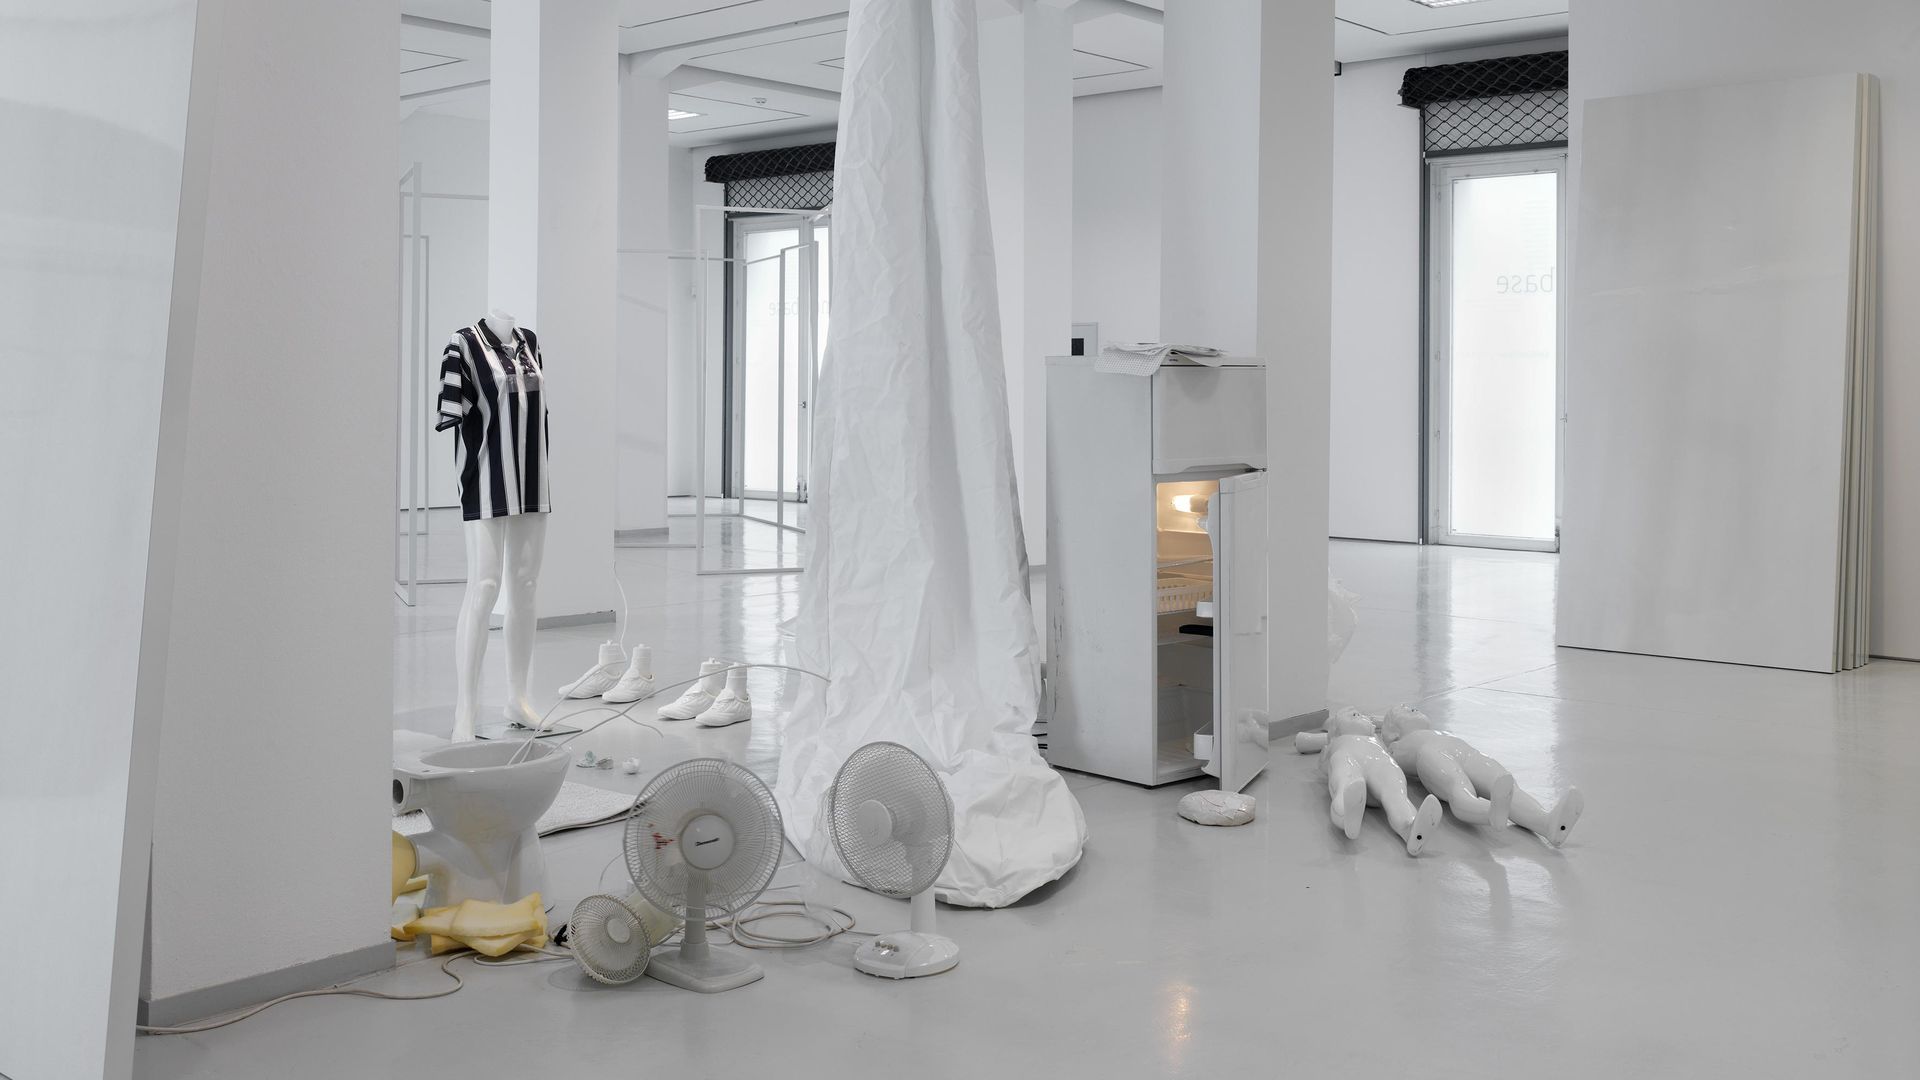 Installationsansicht HOMEBASE, KAI 10 / Arthena Foundation, Düsseldorf, Erik Steinbrecher, HALO ERIK, 2014